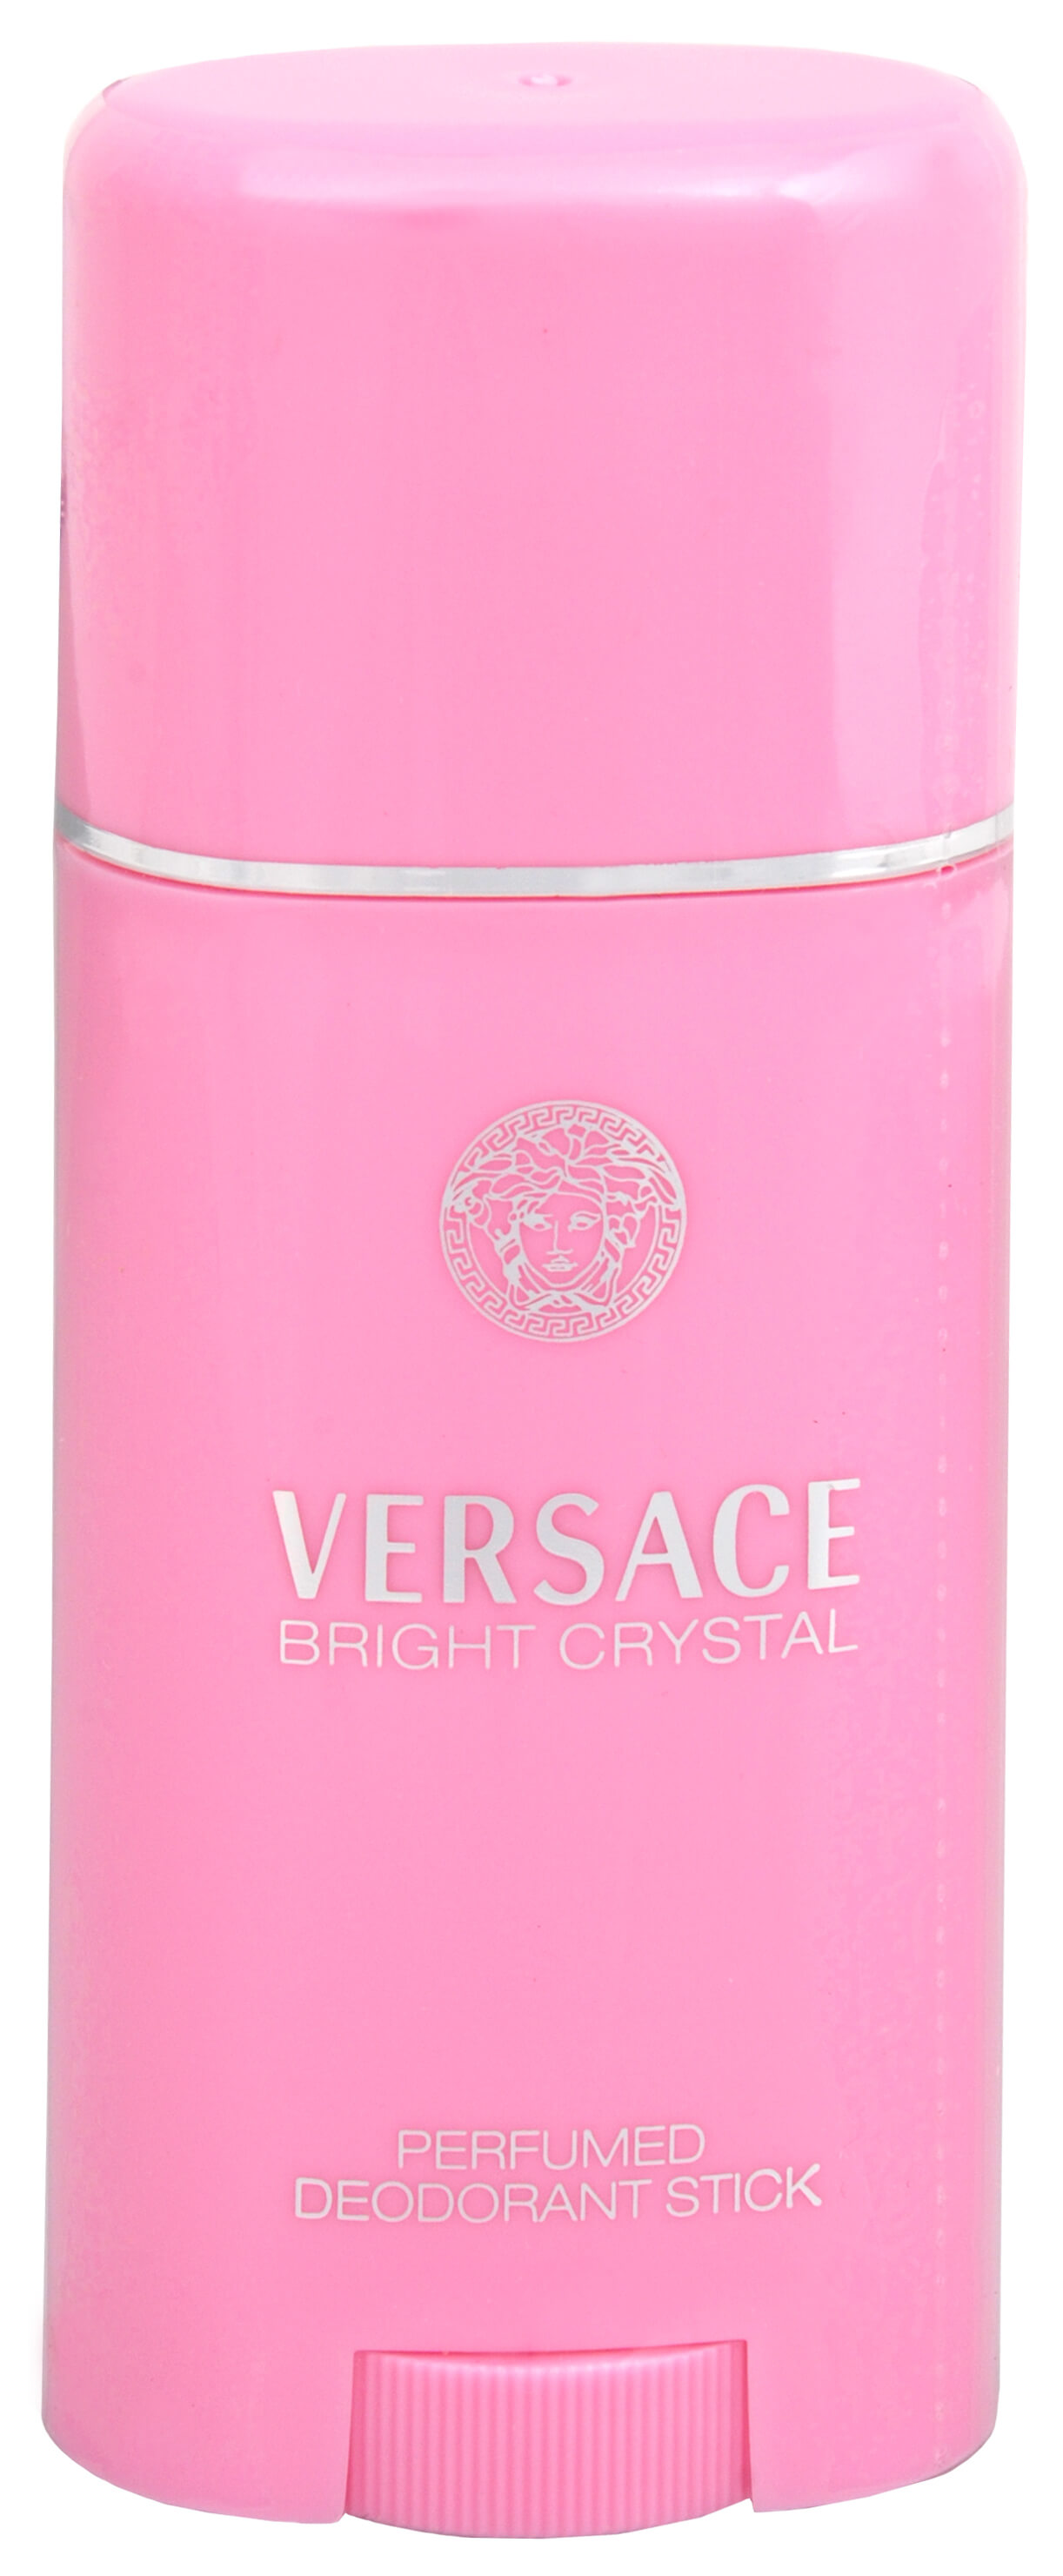 Versace Bright Crystal - tuhý deodorant 50 ml + 2 měsíce na vrácení zboží